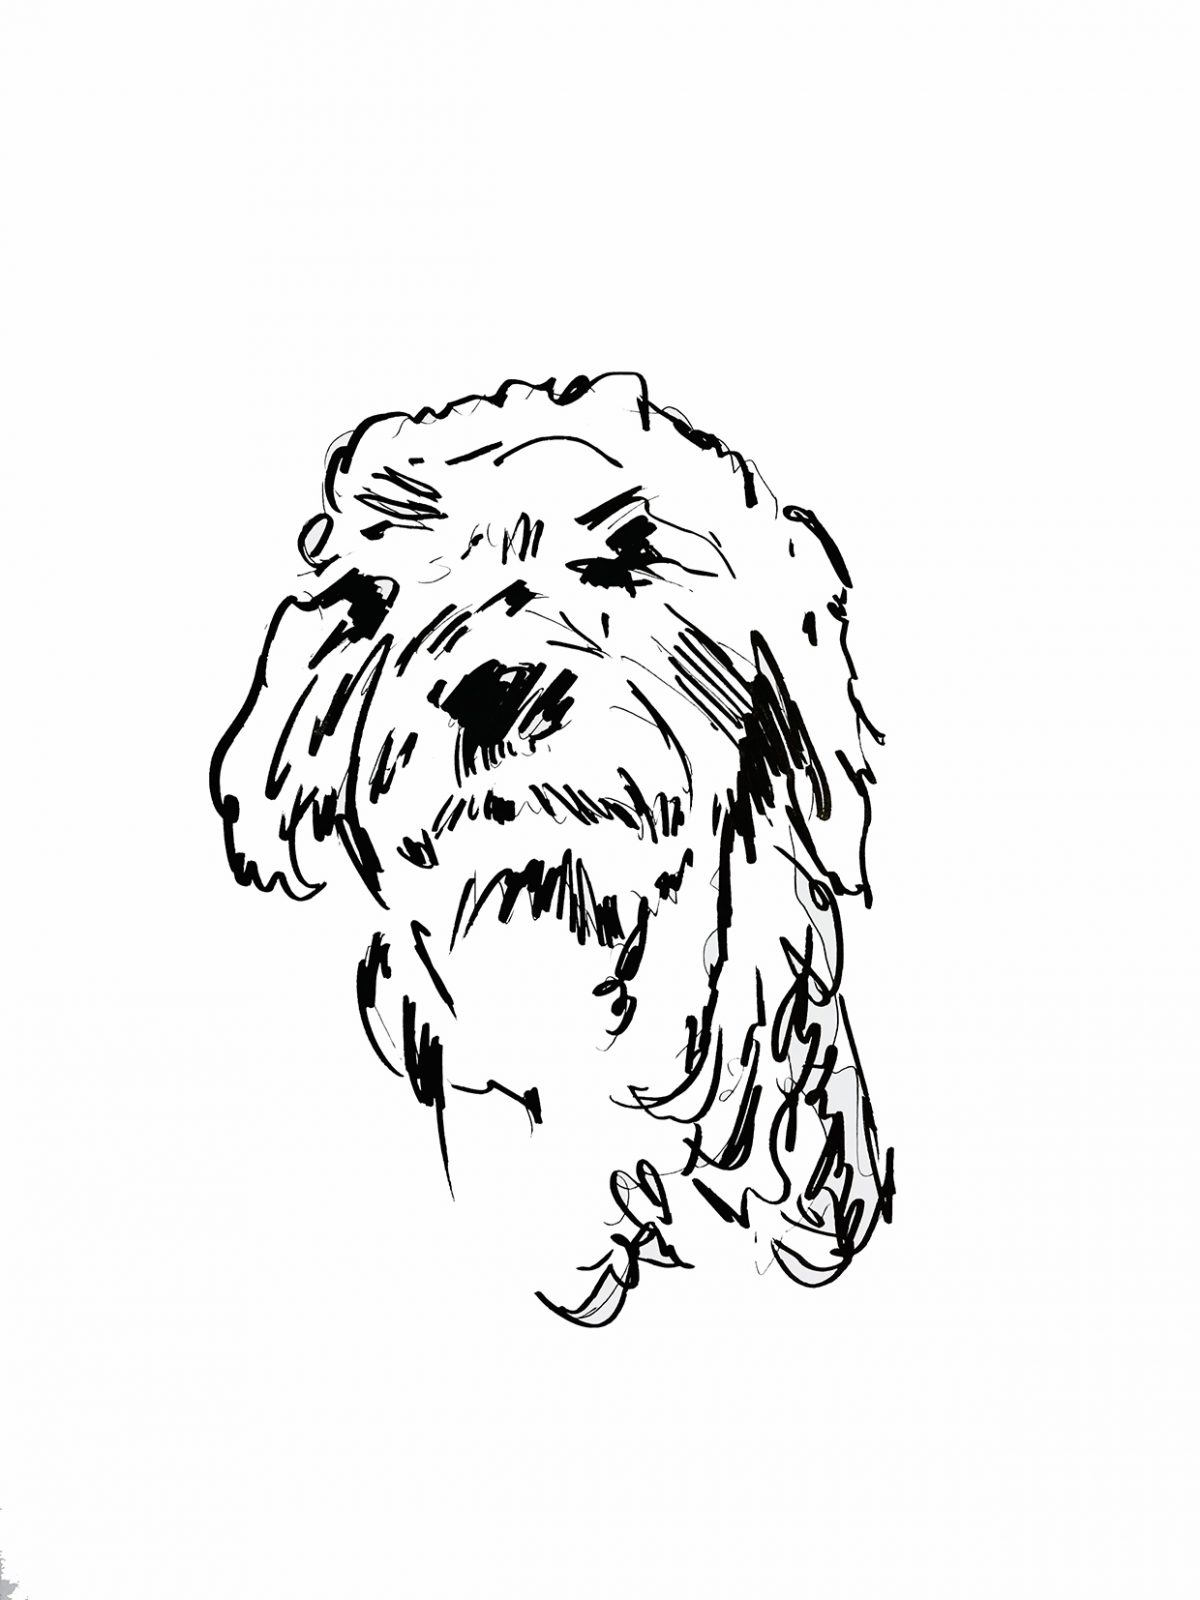 pentekening van hond